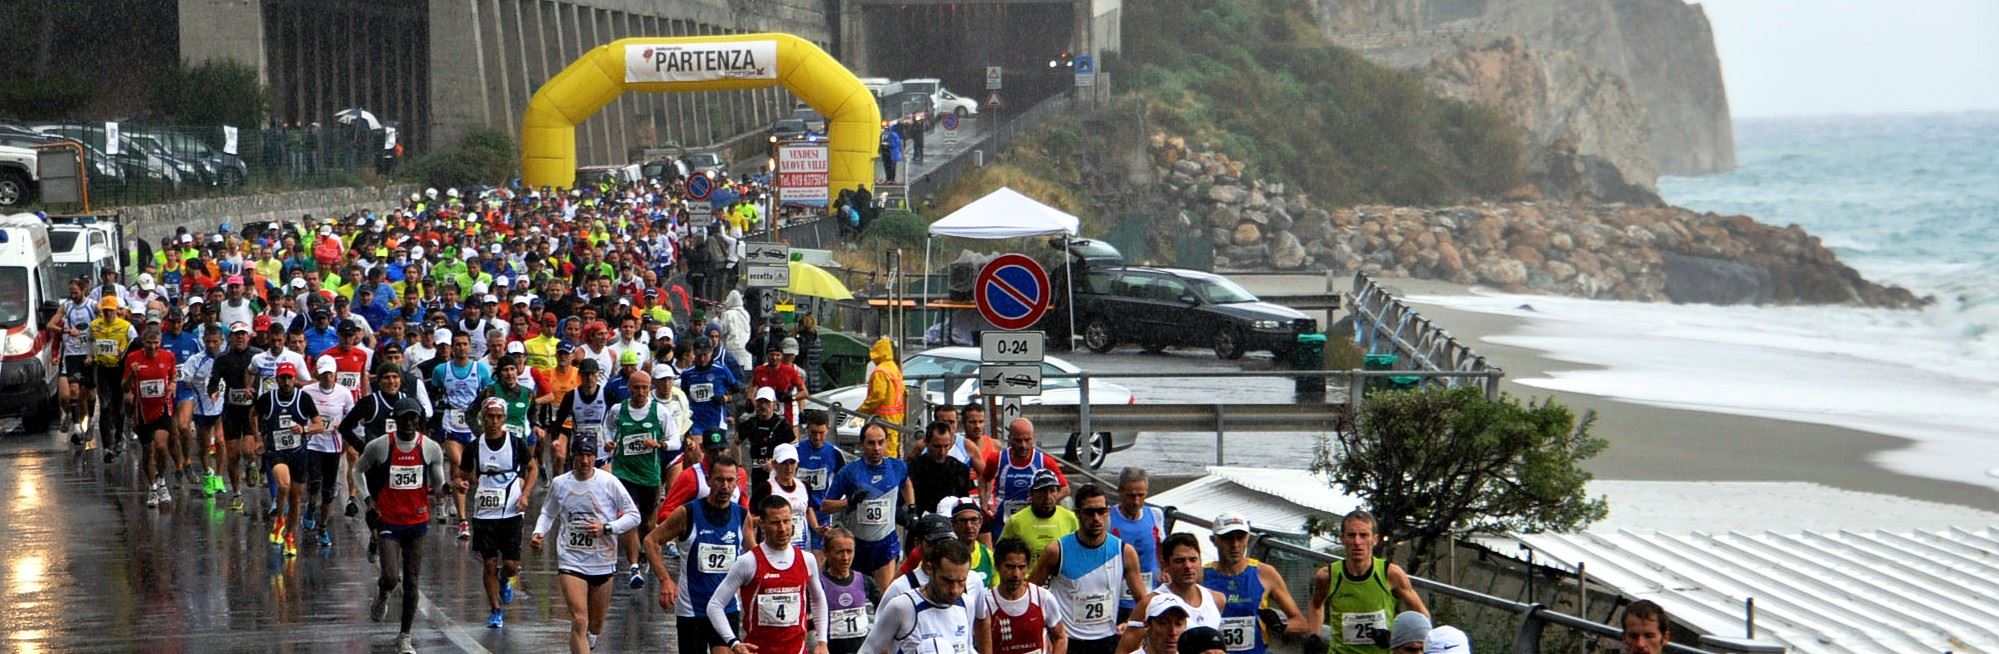 runrivierarun half marathon